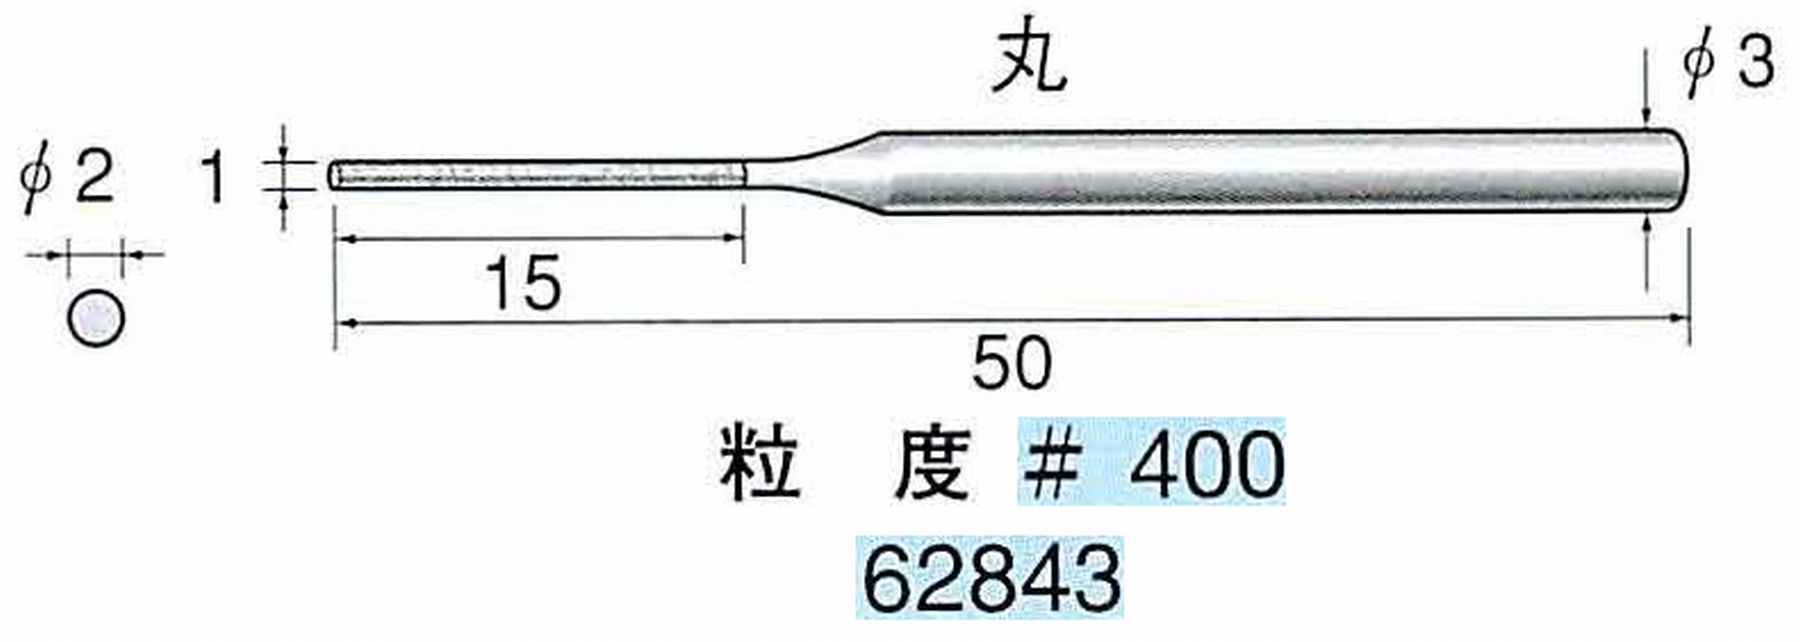 ナカニシ/NAKANISHI 電着ダイヤモンドヤスリショートタイプ 丸 62843